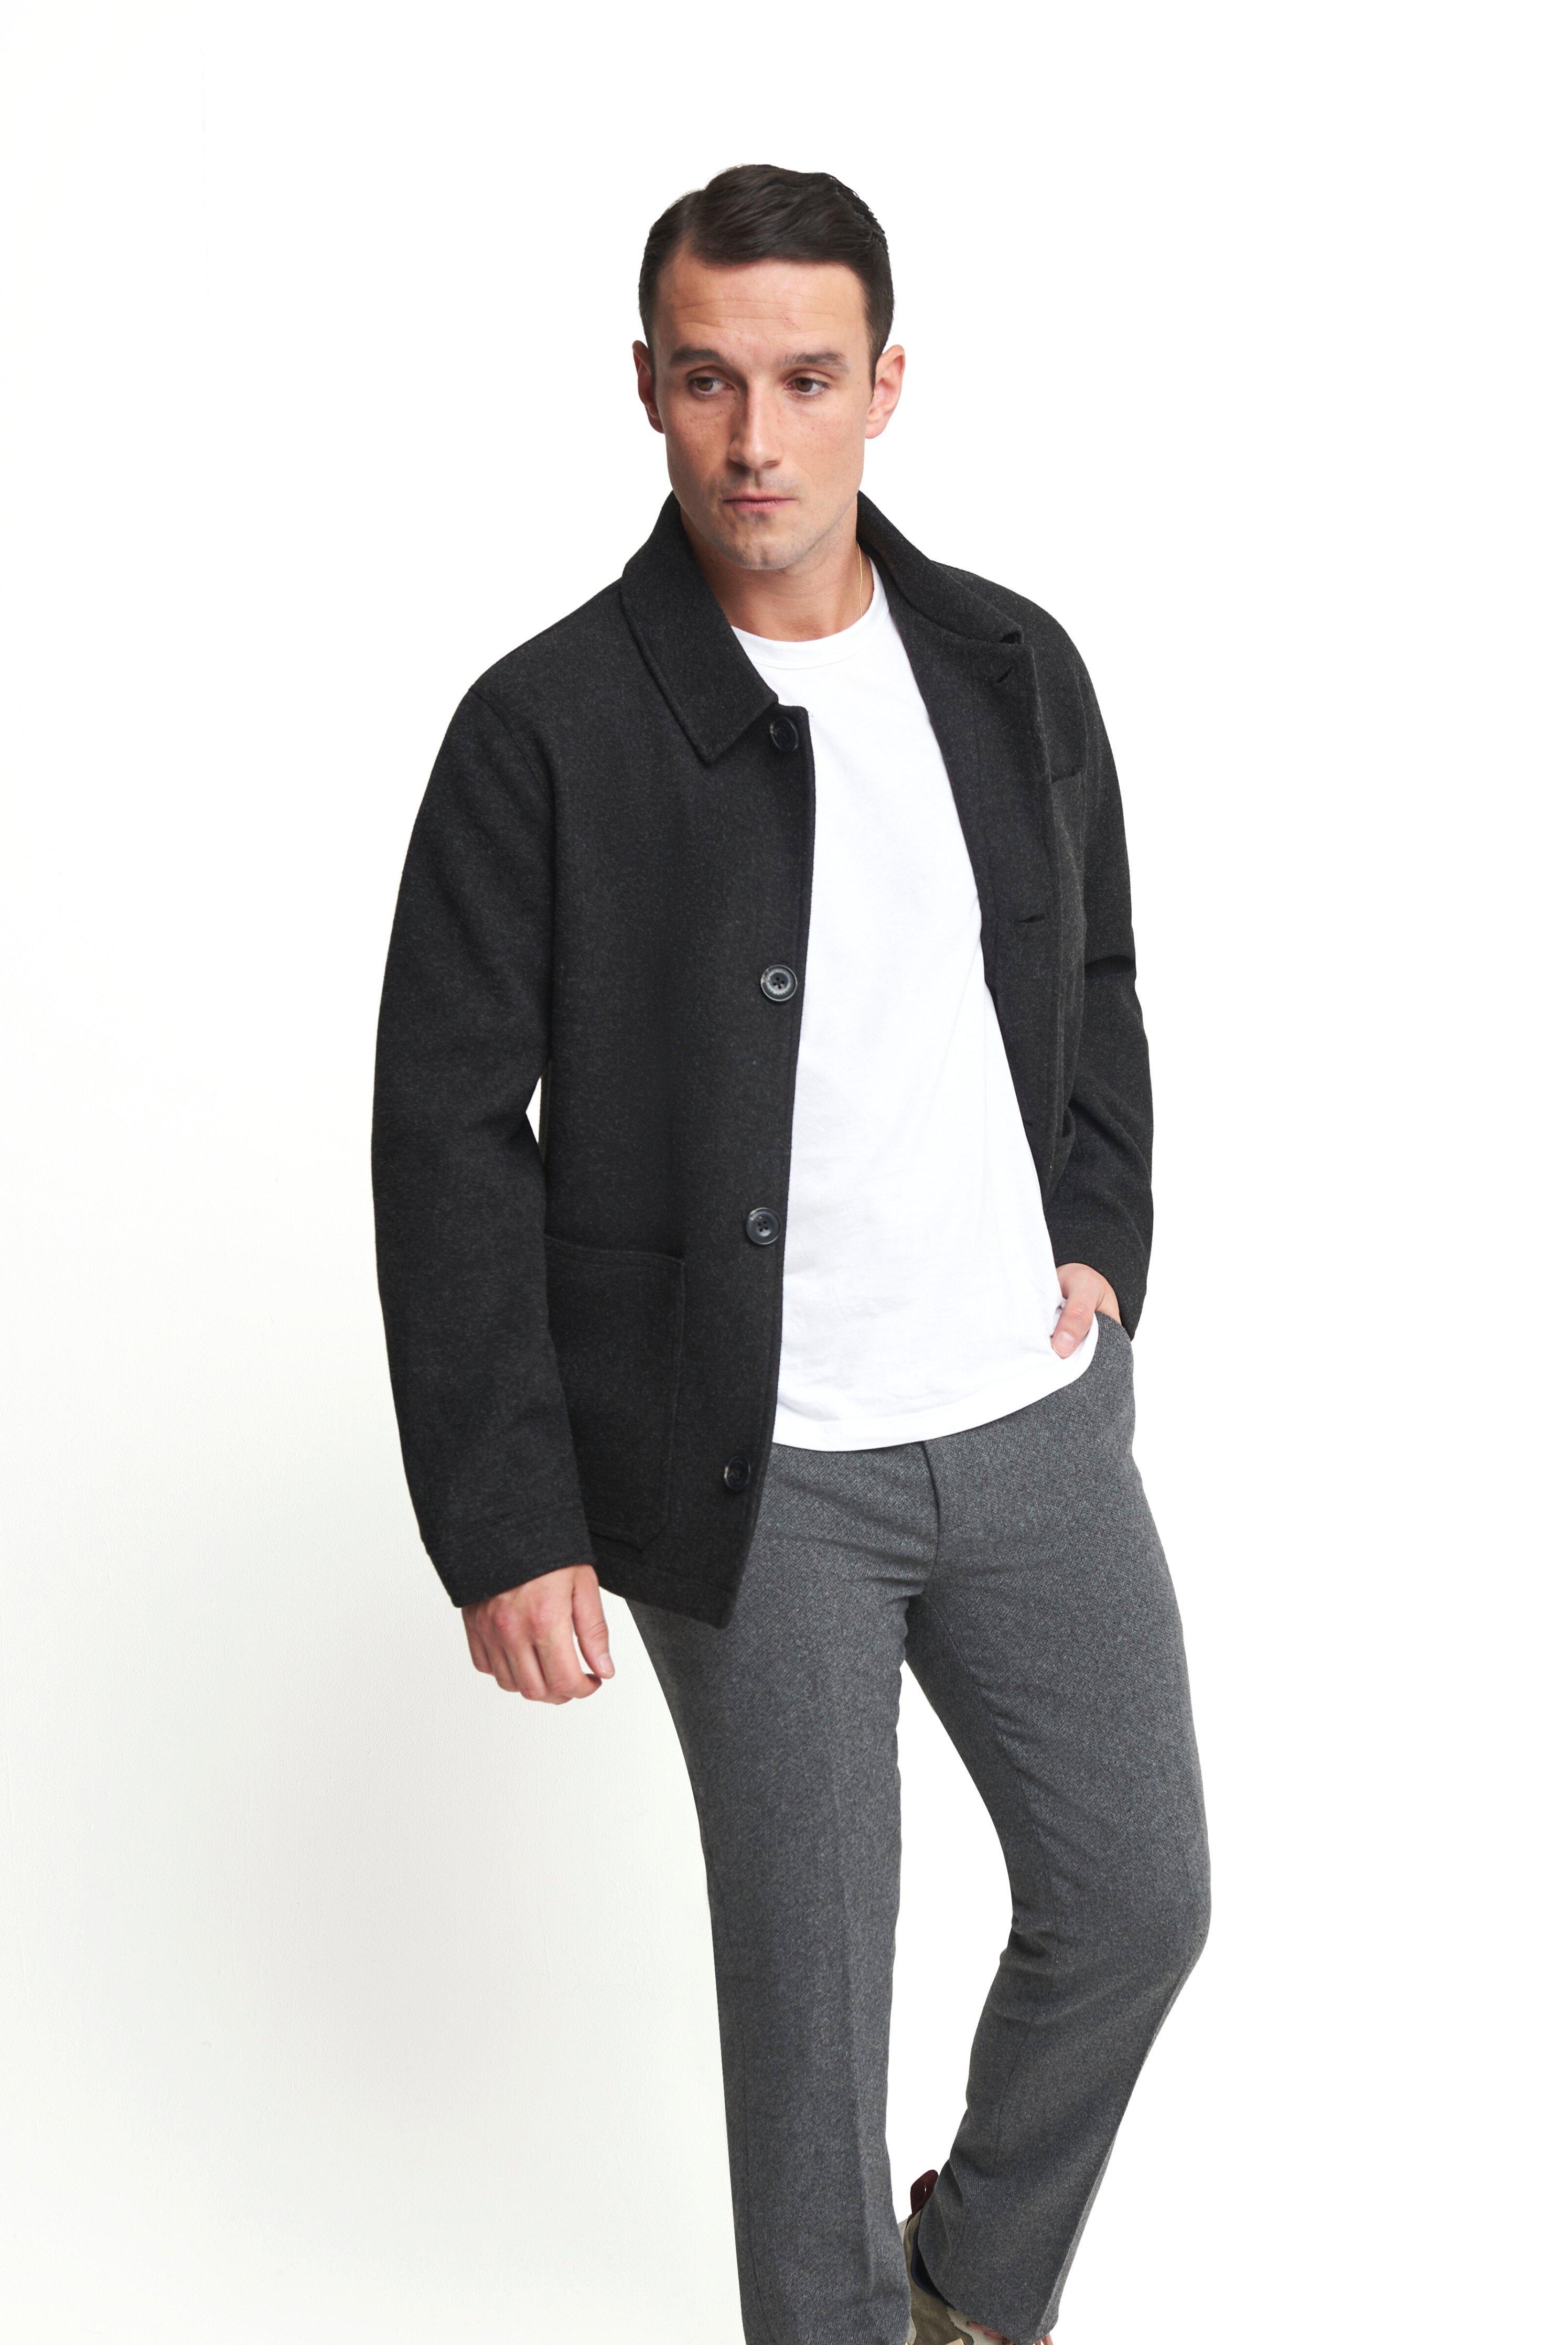 Смарт-куртка Jacques Shacket Harry Brown London, серый johan пальто со вставками harry brown london серый